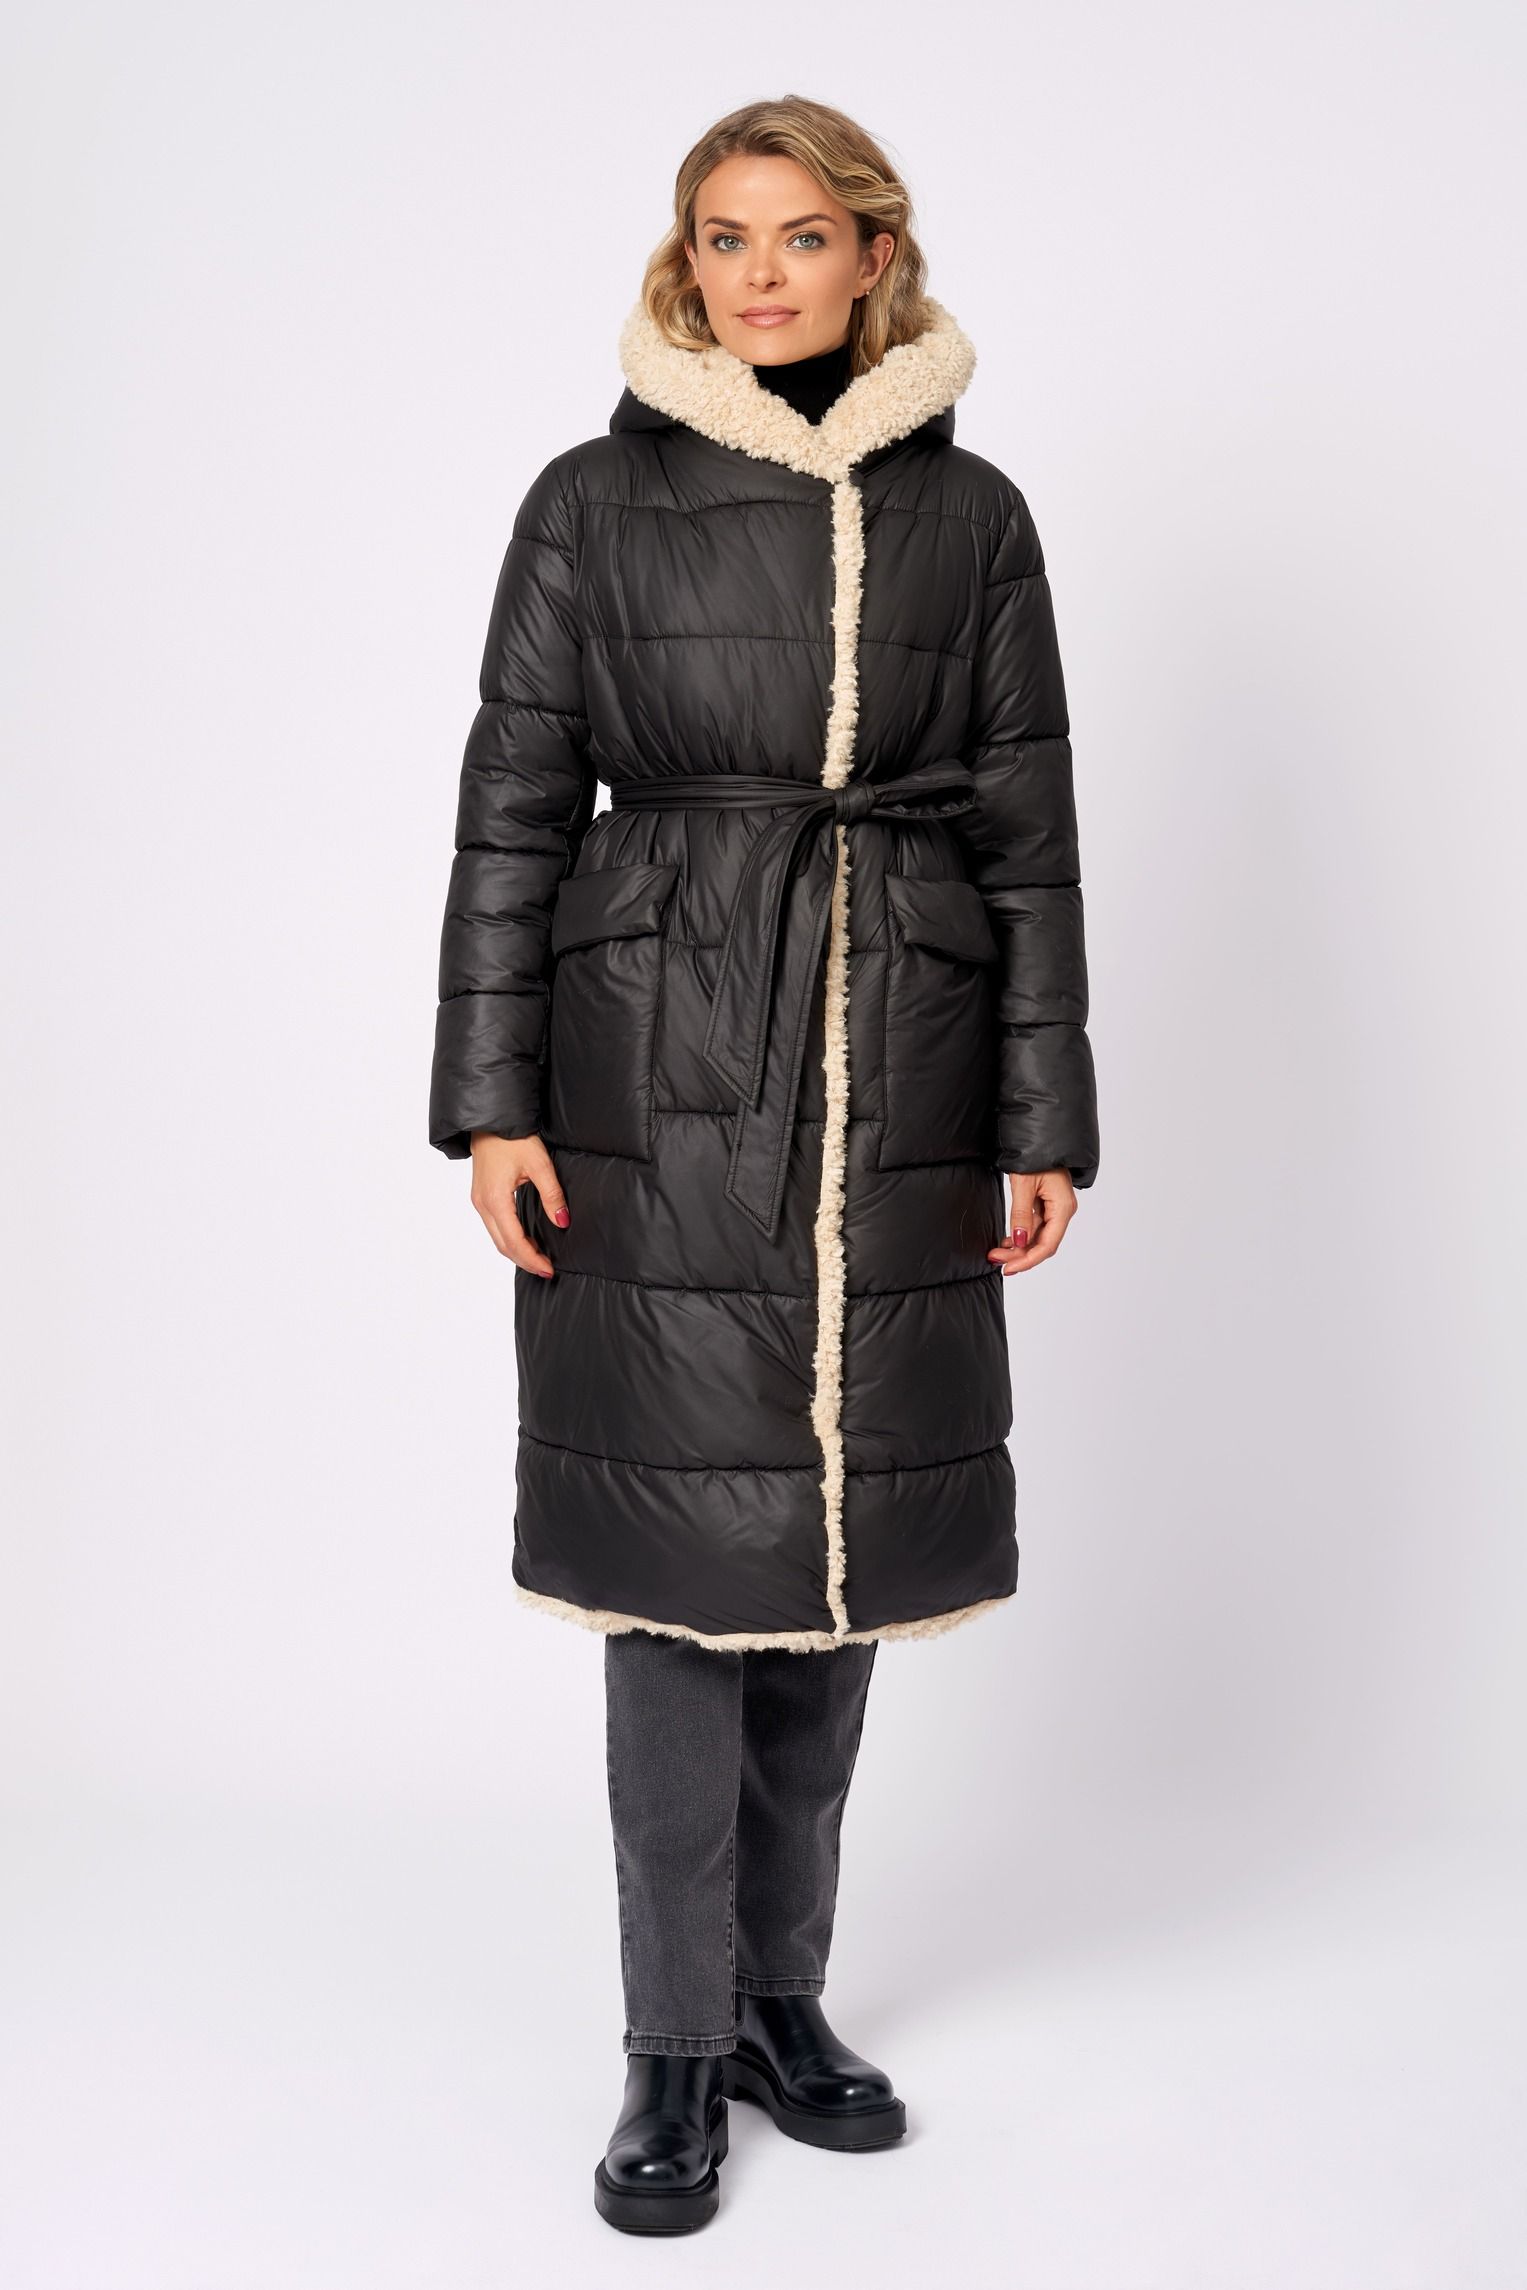 Пальто женское ElectraStyle КТ/ВО/П-32001 черное 48 RU